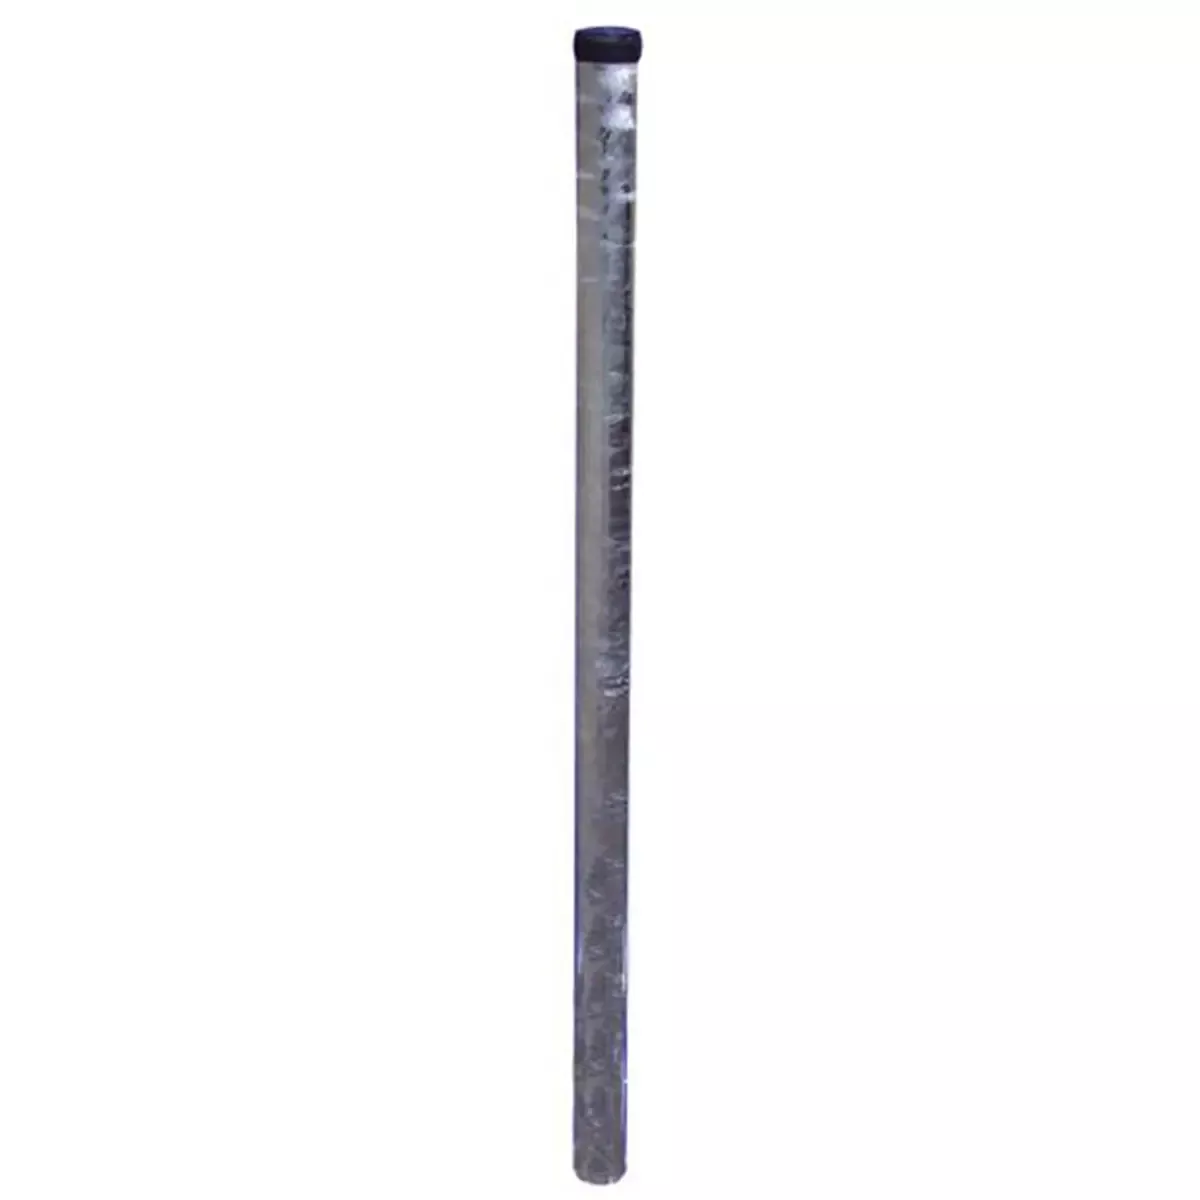 Rohrpfosten aus Stahl, ø 76 mm, Wandstärke 2,9 mm, Länge 2.250 mm, nach IVZ S422